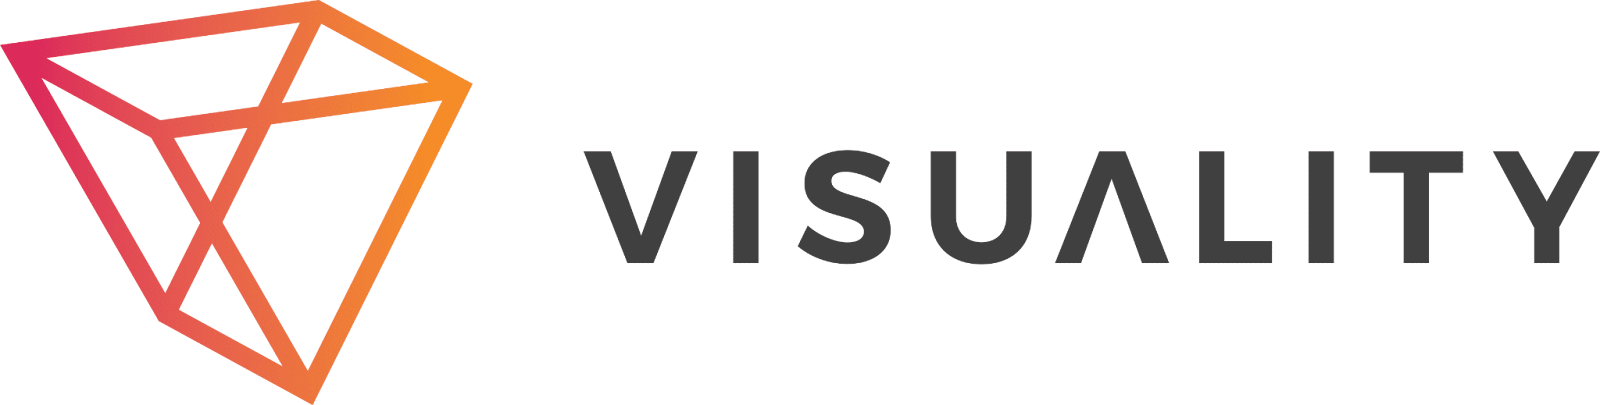 vusiality logo orange gradient 